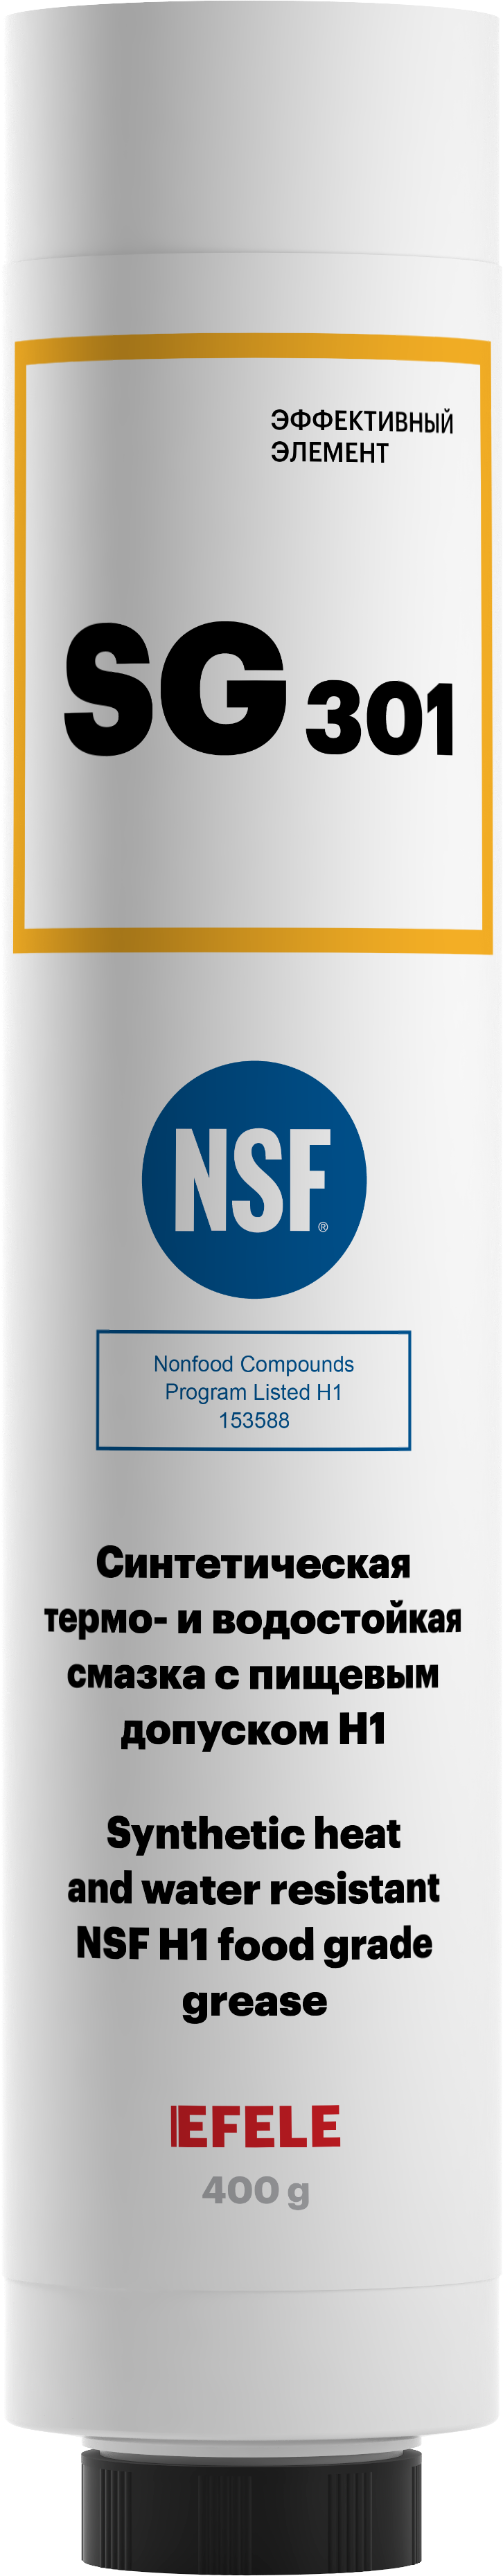 Термо- и водостойкая пластичная смазка EFELE SG-301 с пищевым допуском NSF H1 (картридж Lube-Shuttle 400 г)